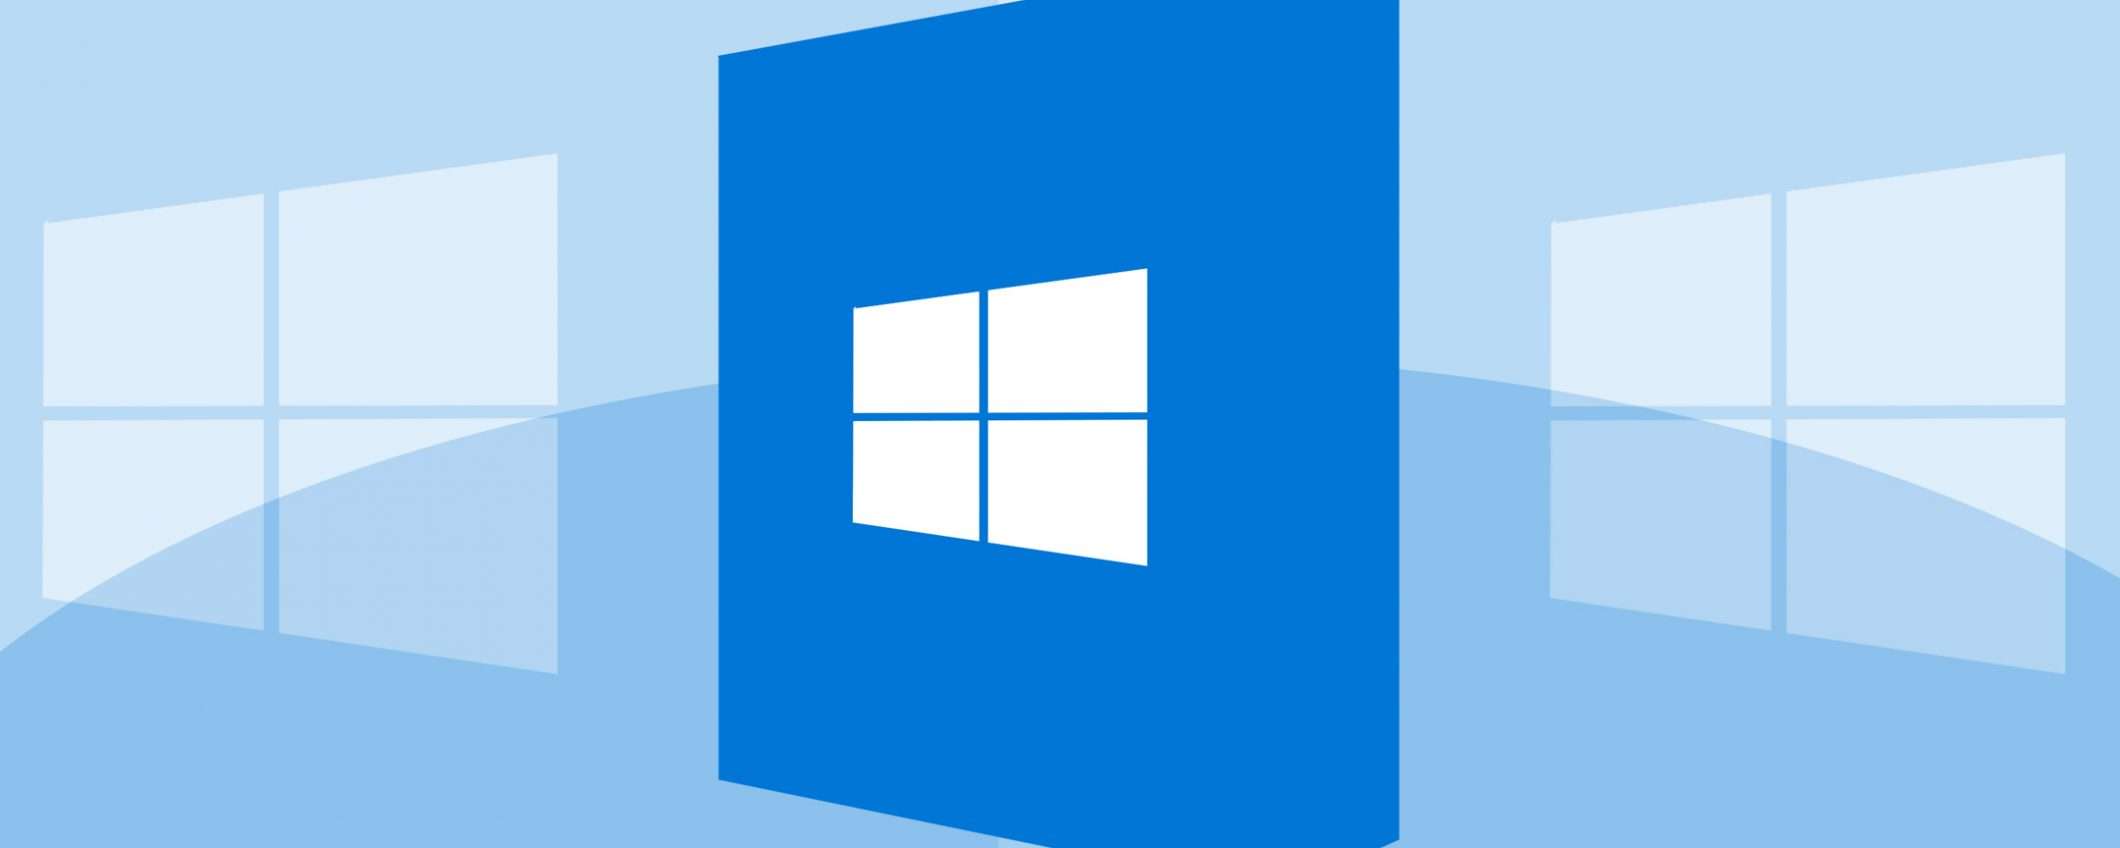 Windows 10: utilizzo alle stelle, +75% in un anno